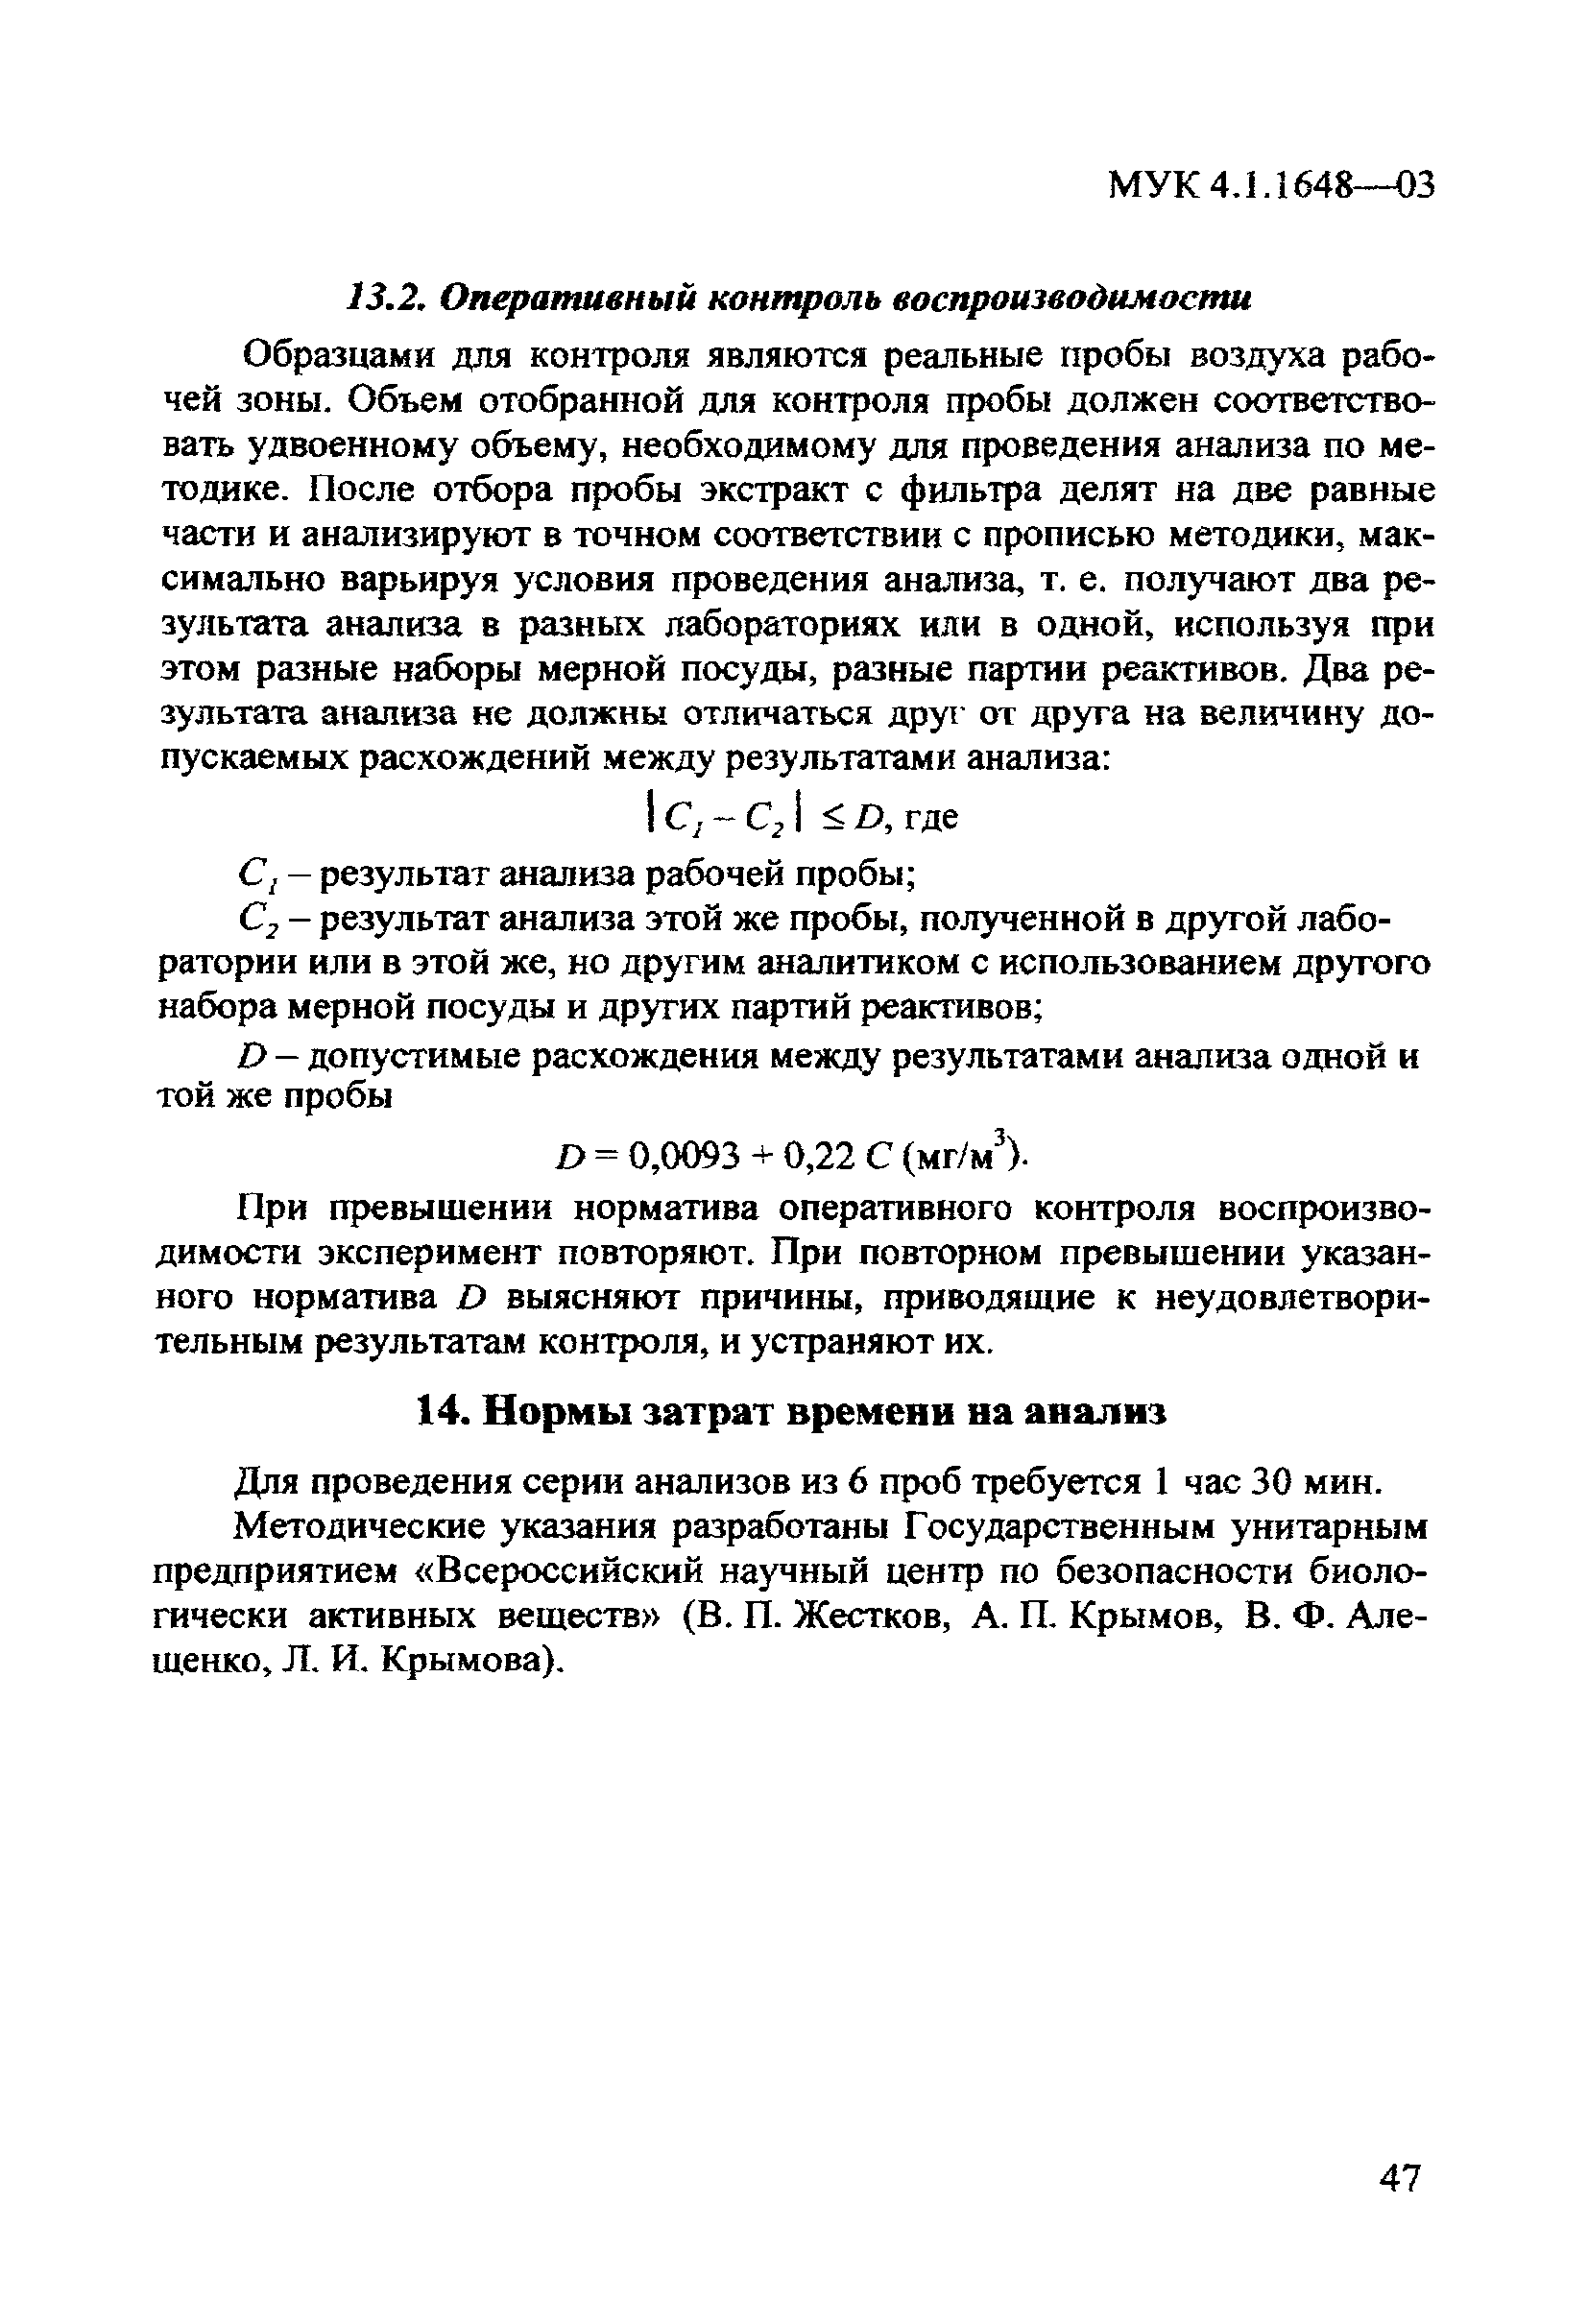 МУК 4.1.1648-03